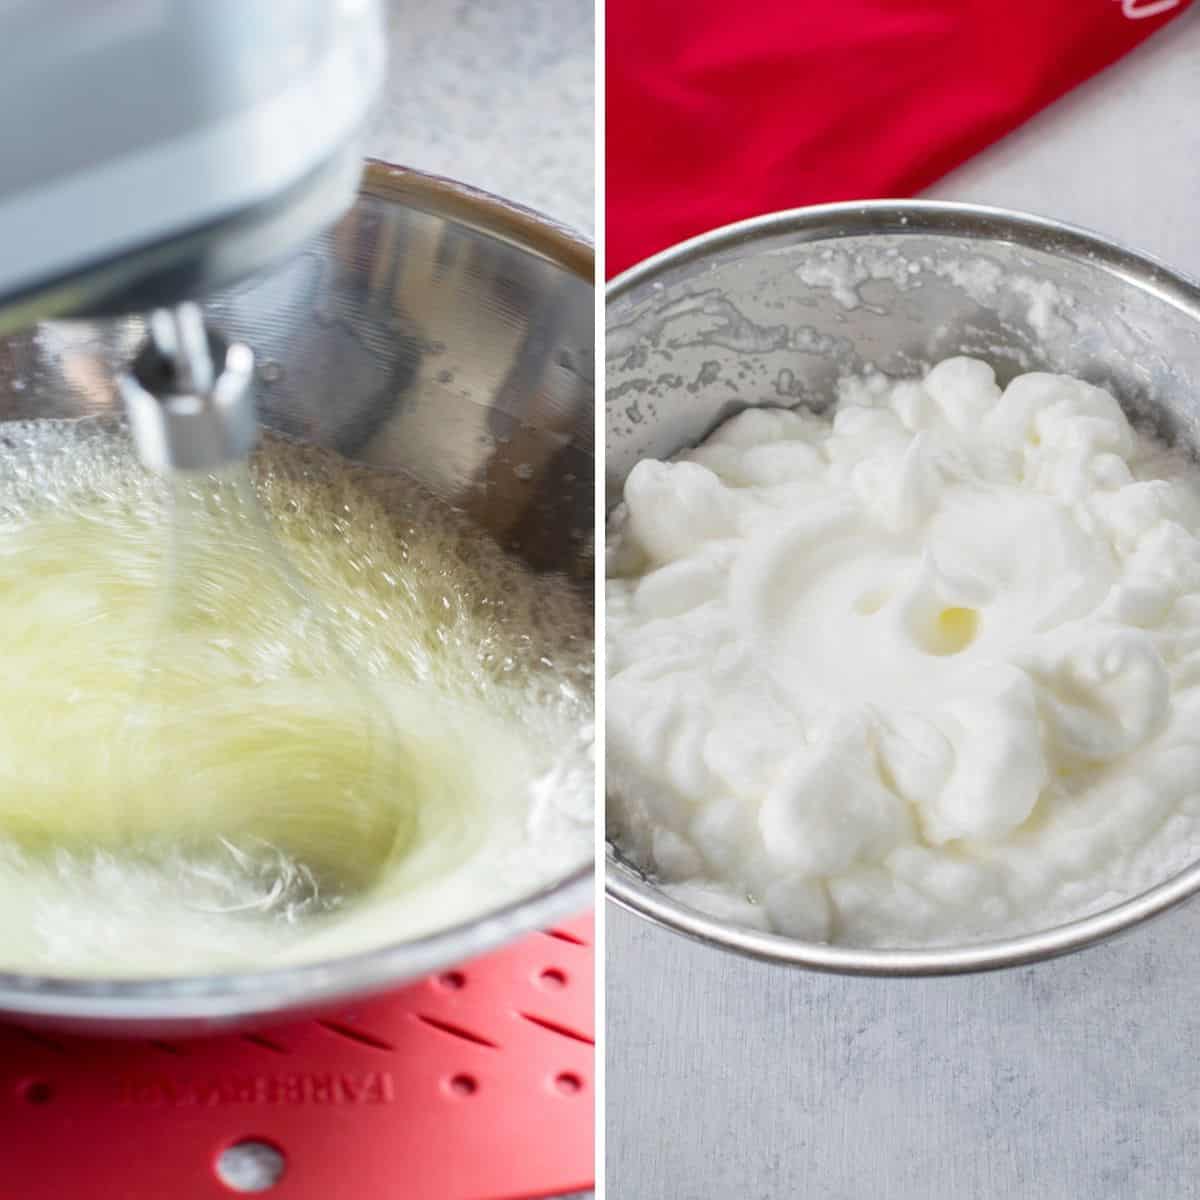 mixer beating egg whites, bowl of beaten whites